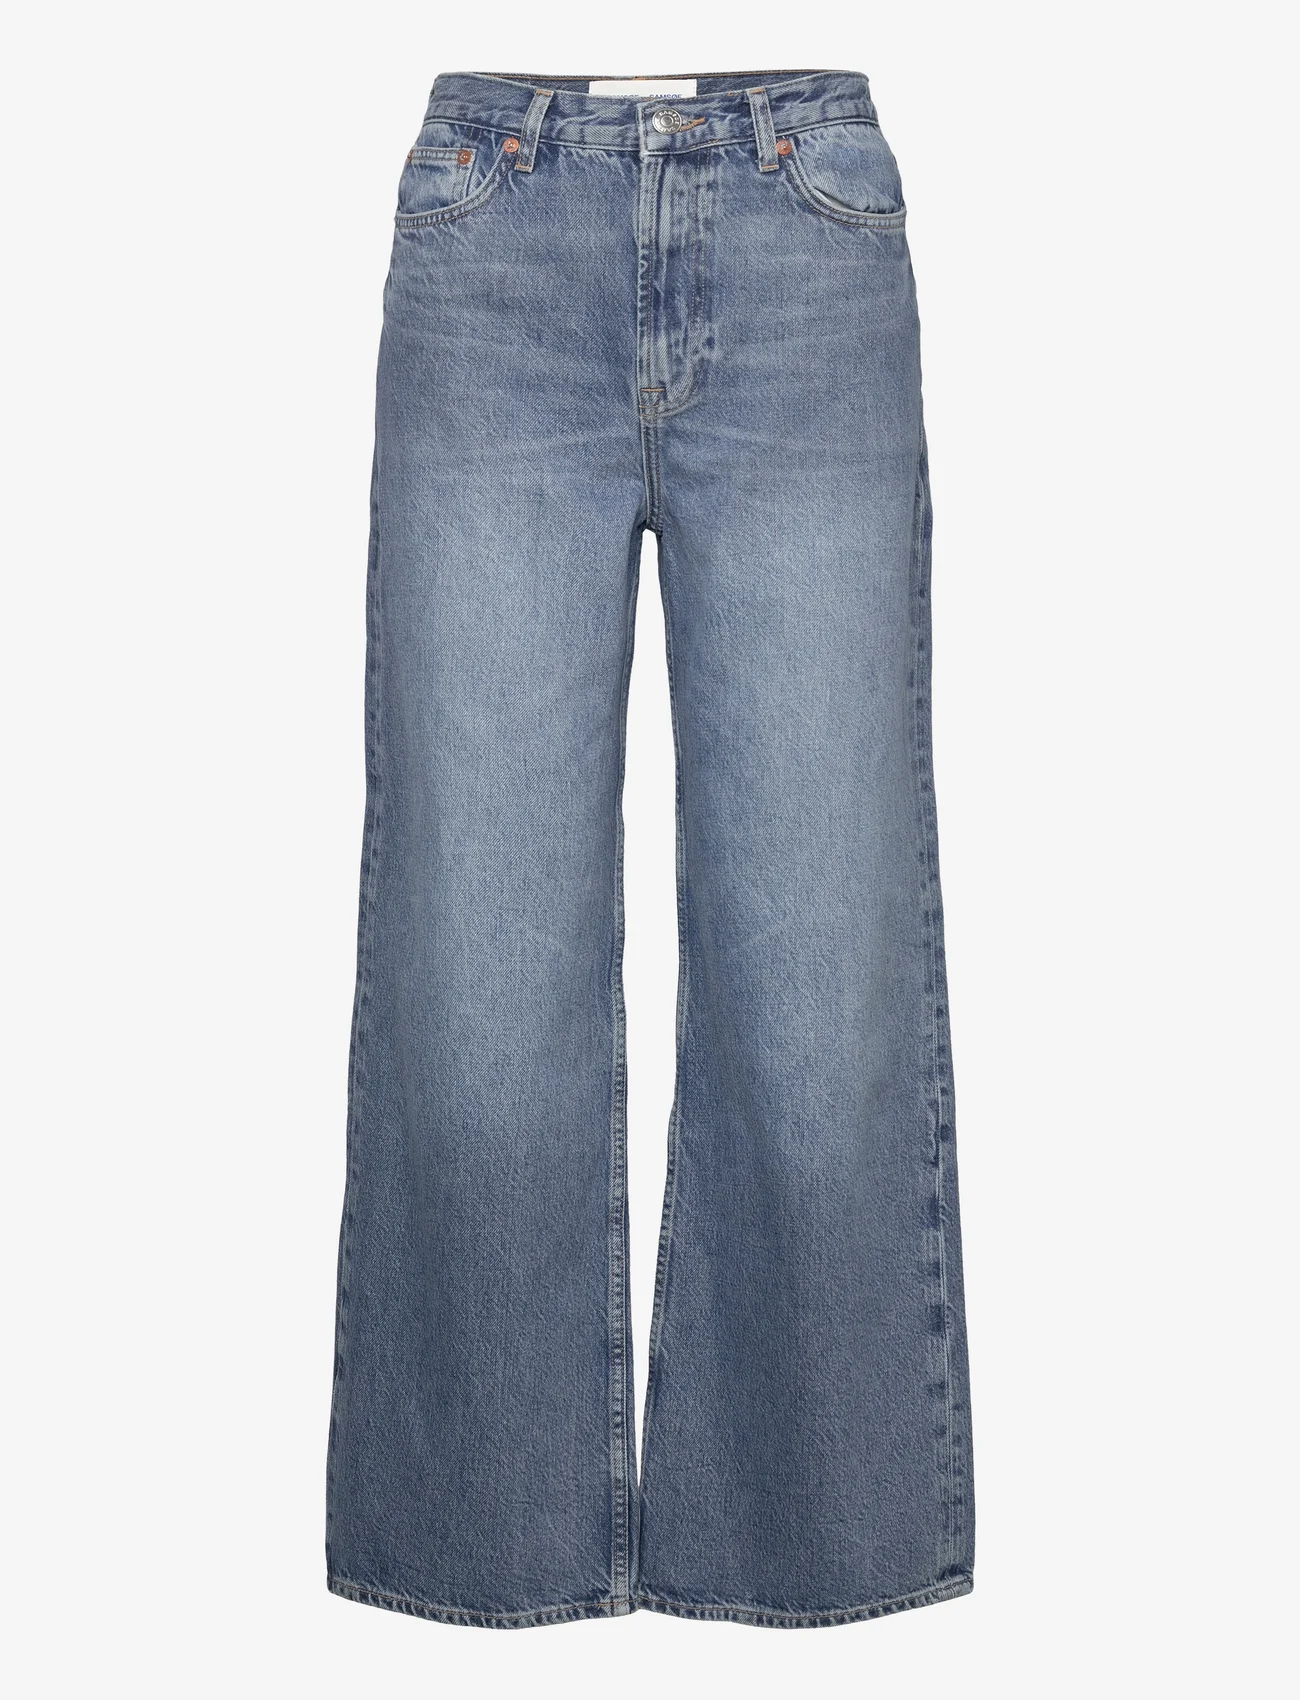 Samsøe Samsøe - Rebecca jeans 15060 - brede jeans - blue moon - 1